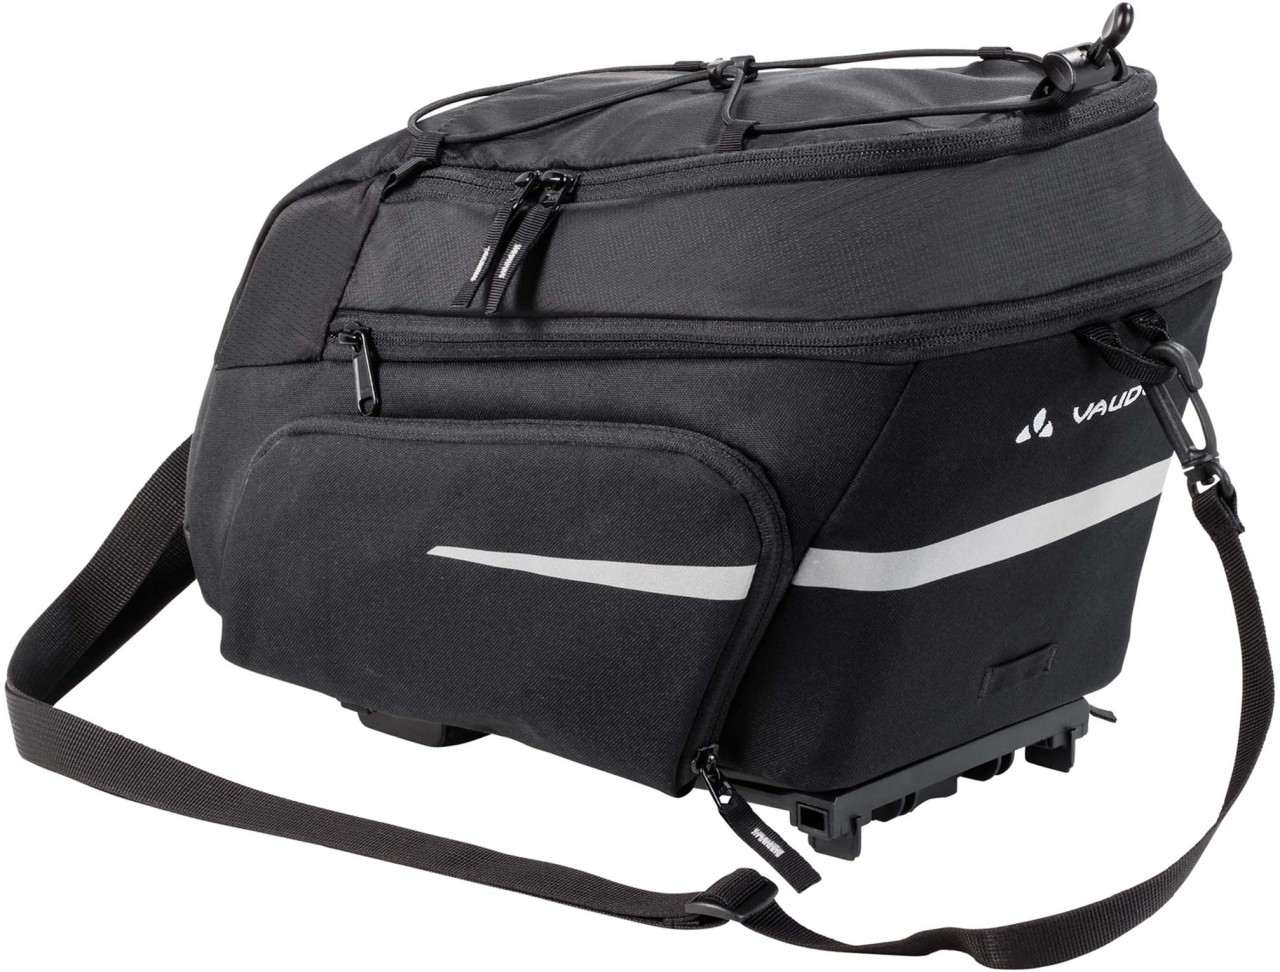 Vaude Silkroad Plus (i-Rack) carrier bag